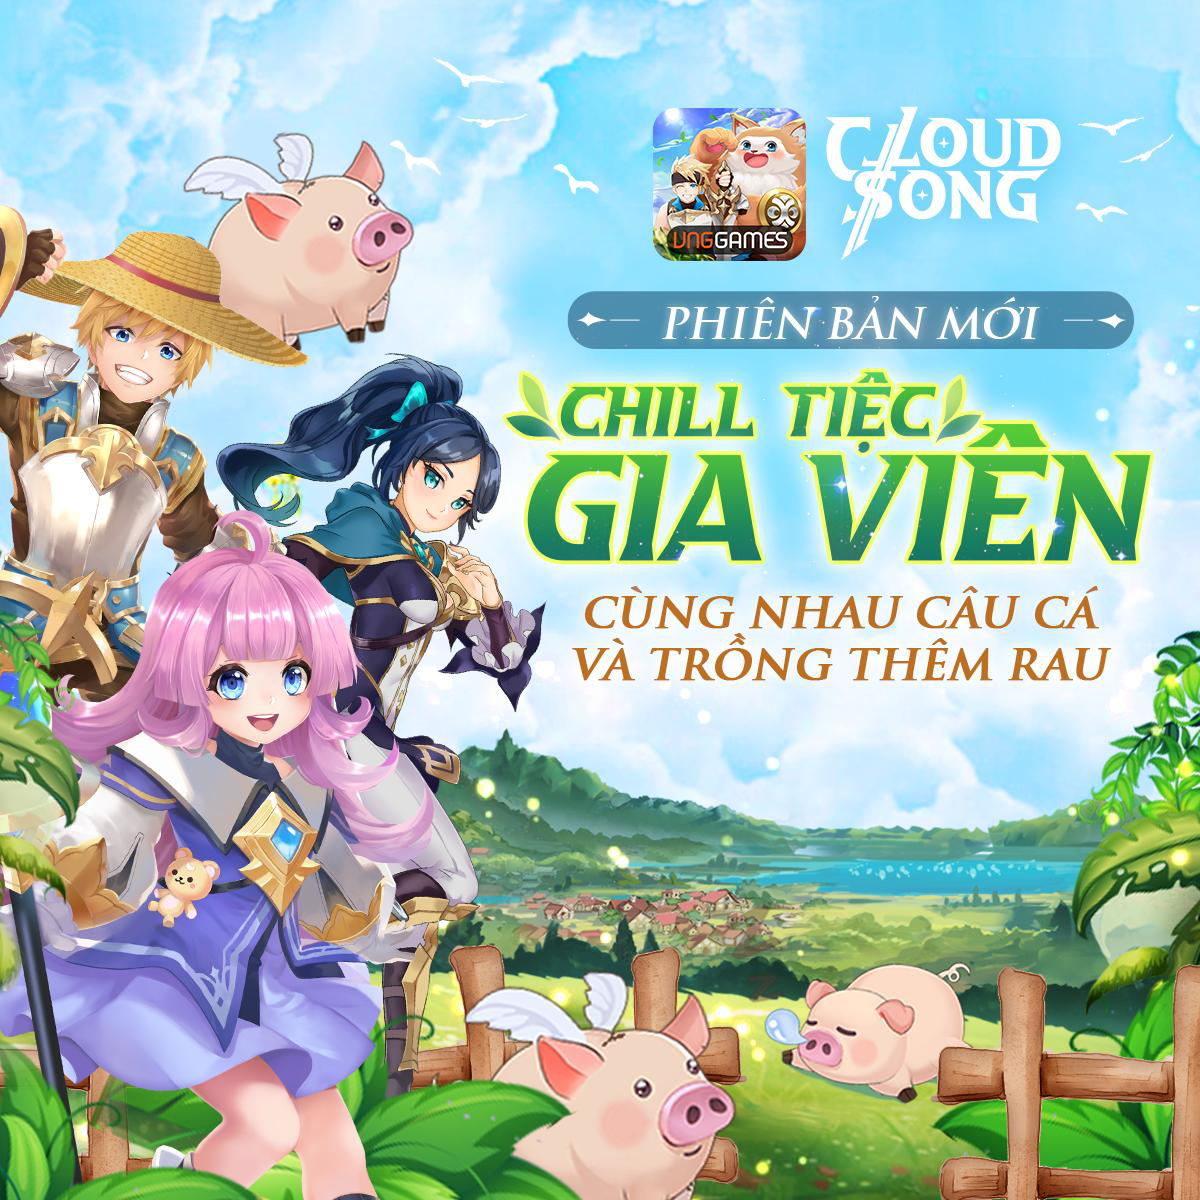 Cloud Song VNG là một game online mới nhất từ VNG, với đồ họa đẹp mắt và cốt truyện hấp dẫn. Nếu bạn là một tín đồ của game, hãy đến xem bức ảnh liên quan đến Cloud Song VNG để cảm nhận thêm về trò chơi này.